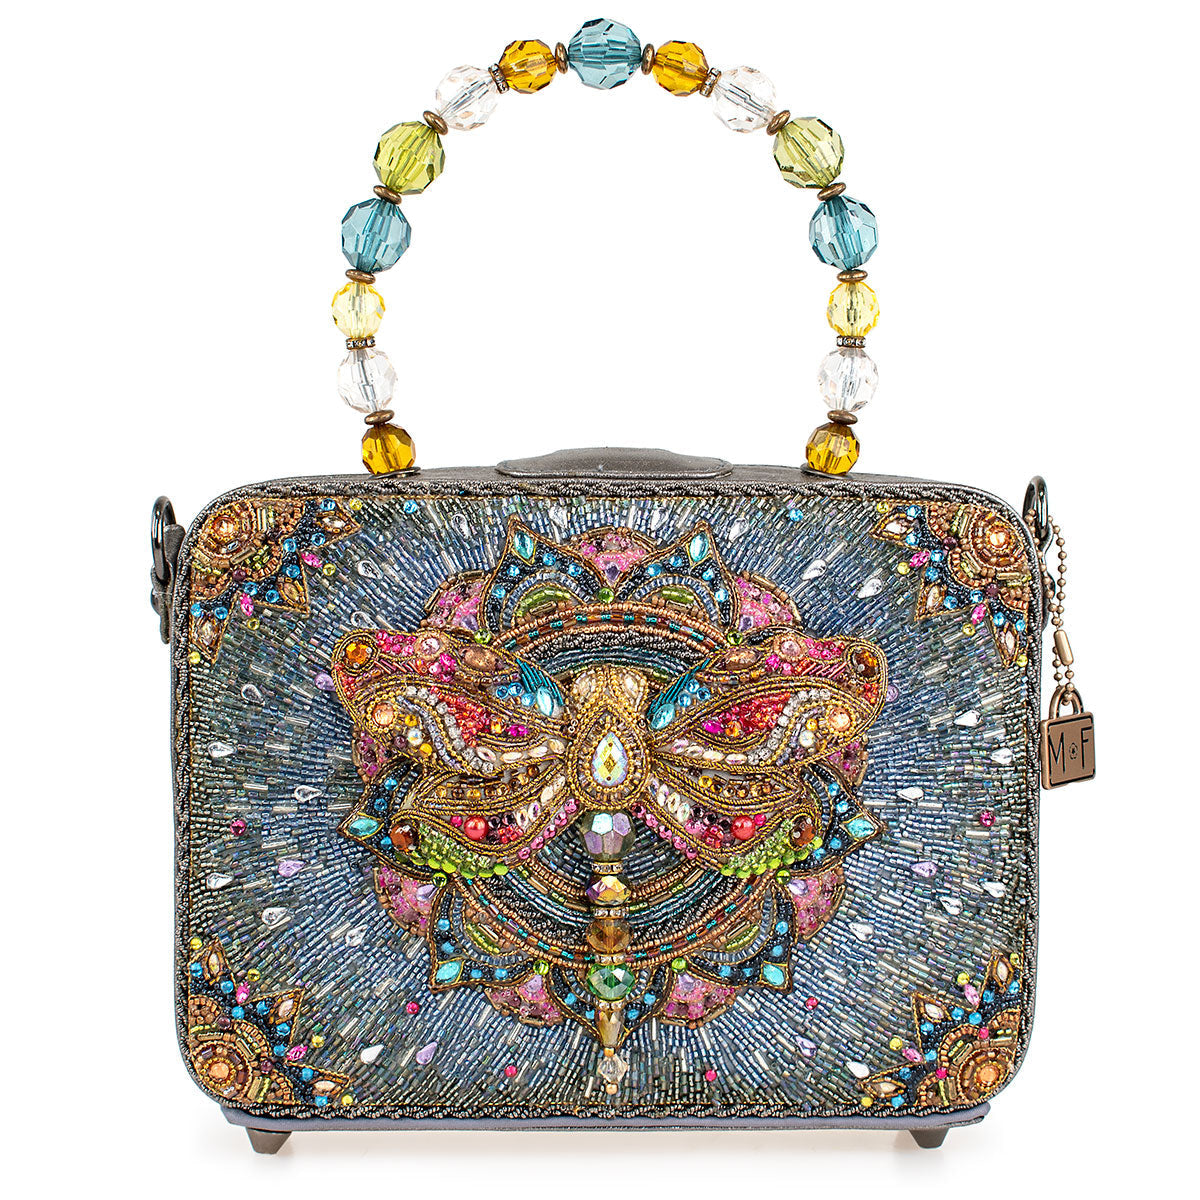 Mystic Handbag - Top Handle